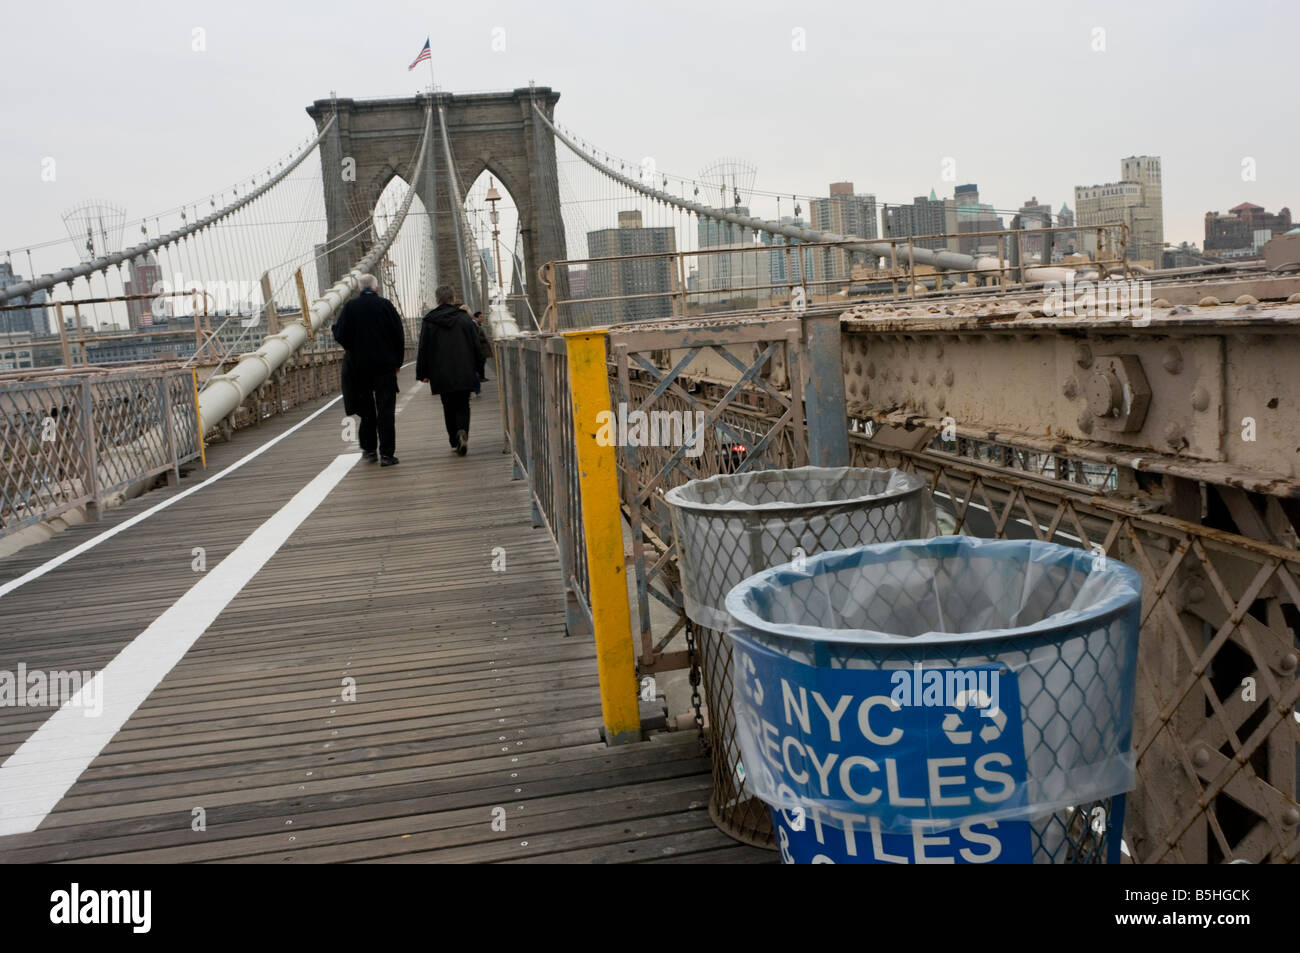 New York NY 3 November 2008 Brooklyn Bridge Public Space recycling Stock Photo